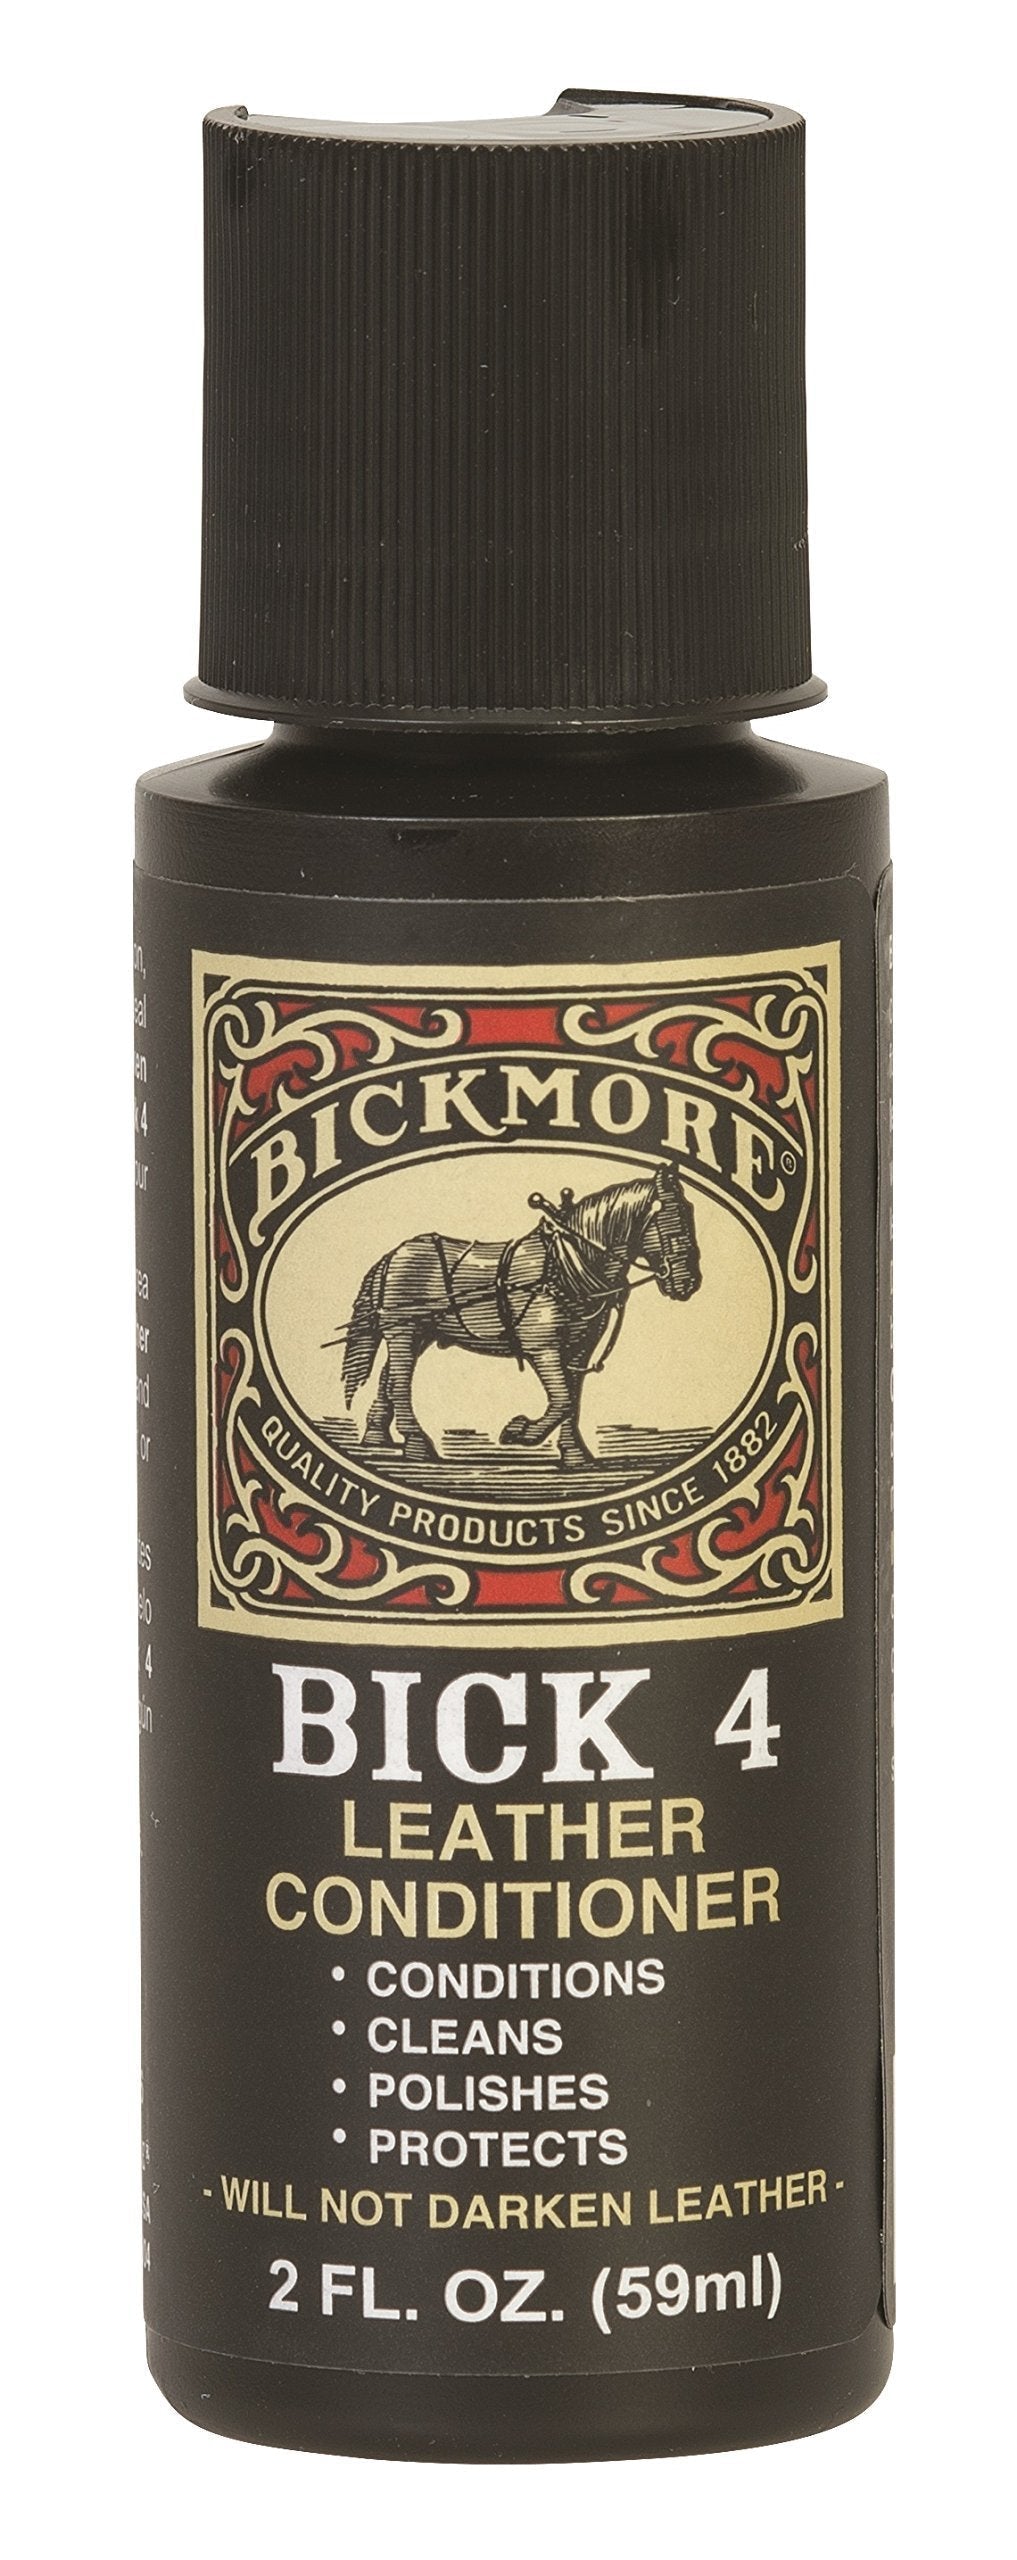  [AUSTRALIA] - Bickmore Bick 4 Leather Conditioner, Neutral, 2 oz